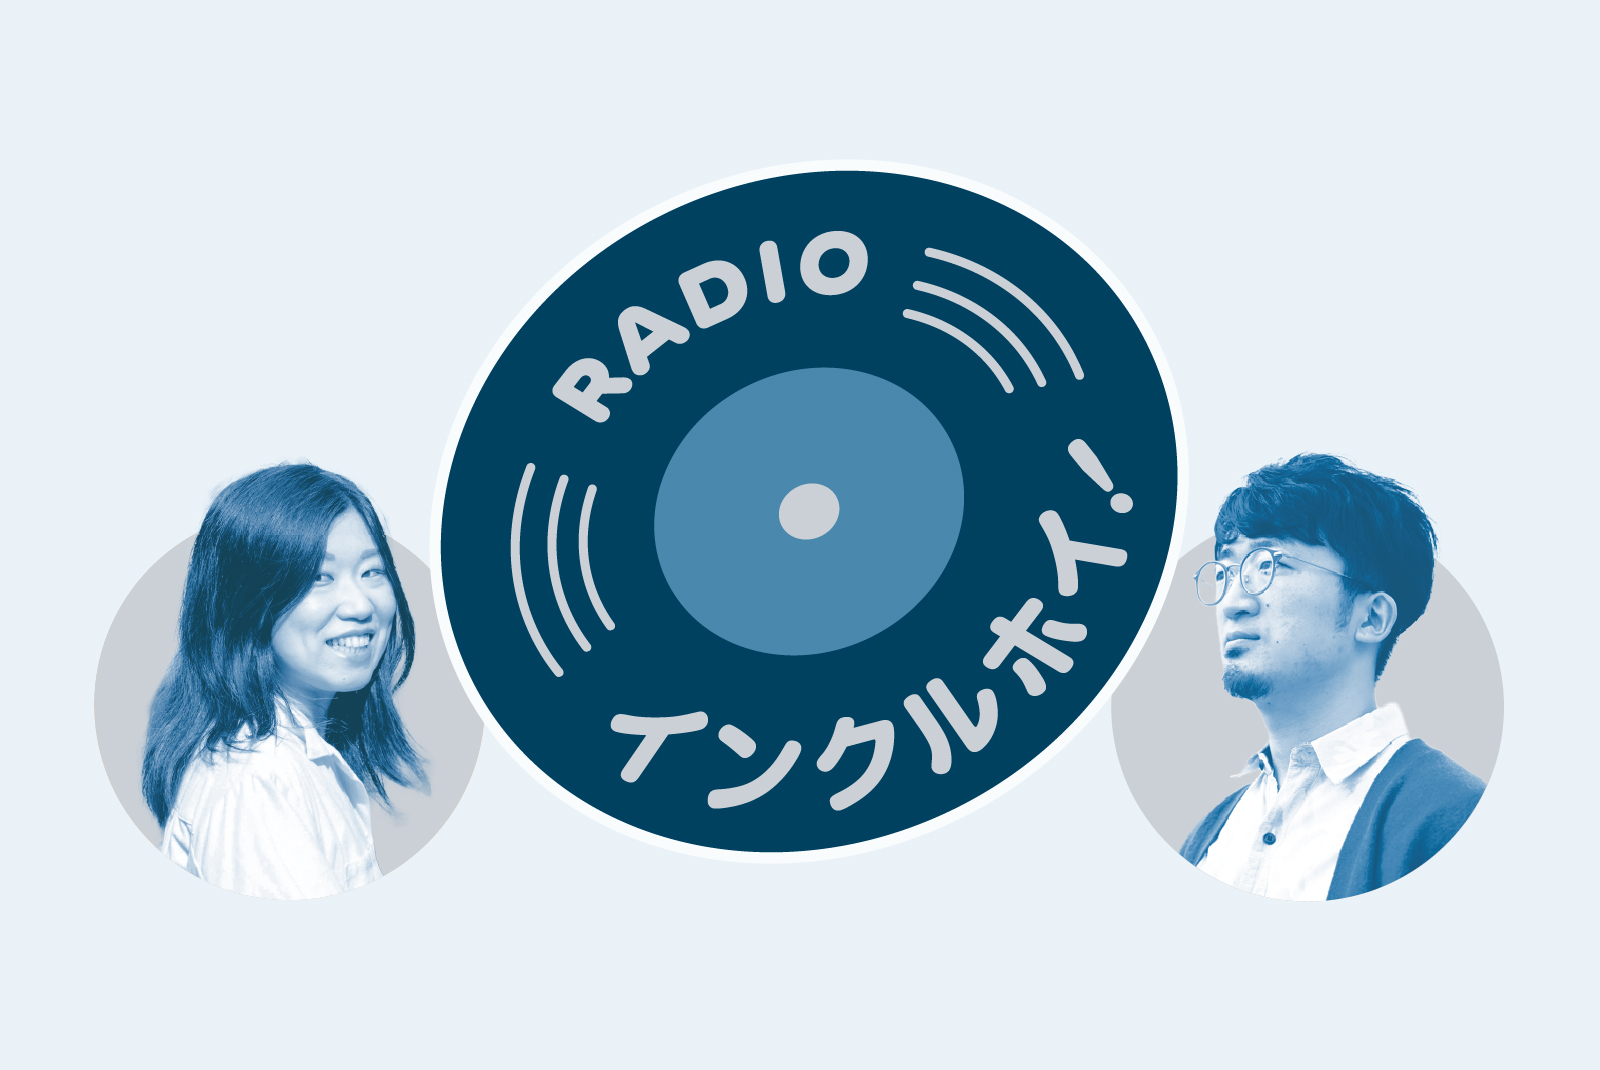 【メインビジュアル】レコード状のRADIOインクルホイ！のロゴと、ラジオパーソナリティの山田小百合さん（左）と、浅野翔（かける）さん（右）